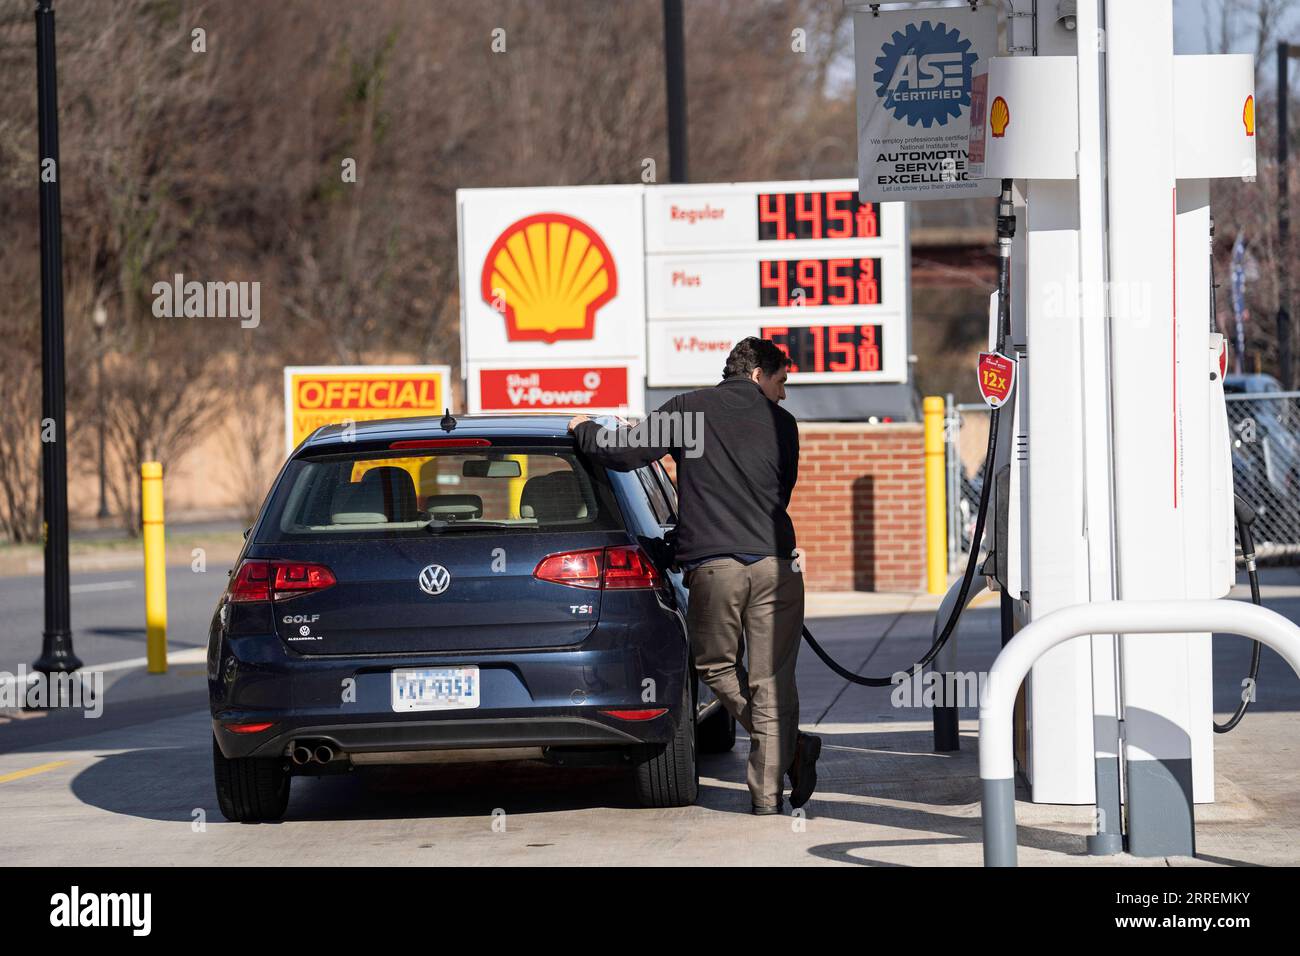 220308 -- ARLINGTON, le 8 mars 2022 -- Un homme fait le plein d'essence dans une station-service à Arlington, Virginie, États-Unis, le 8 mars 2022. La moyenne nationale américaine pour un gallon d'essence ordinaire a atteint un nouveau record de 4,173 dollars américains mardi, selon les données de l'American automobile Association AAA. ÉTATS-UNIS-VIRGINIE-ARLINGTON-PRIX DU GAZ-NOUVEAU RECORD LIUXJIE PUBLICATIONXNOTXINXCHN Banque D'Images